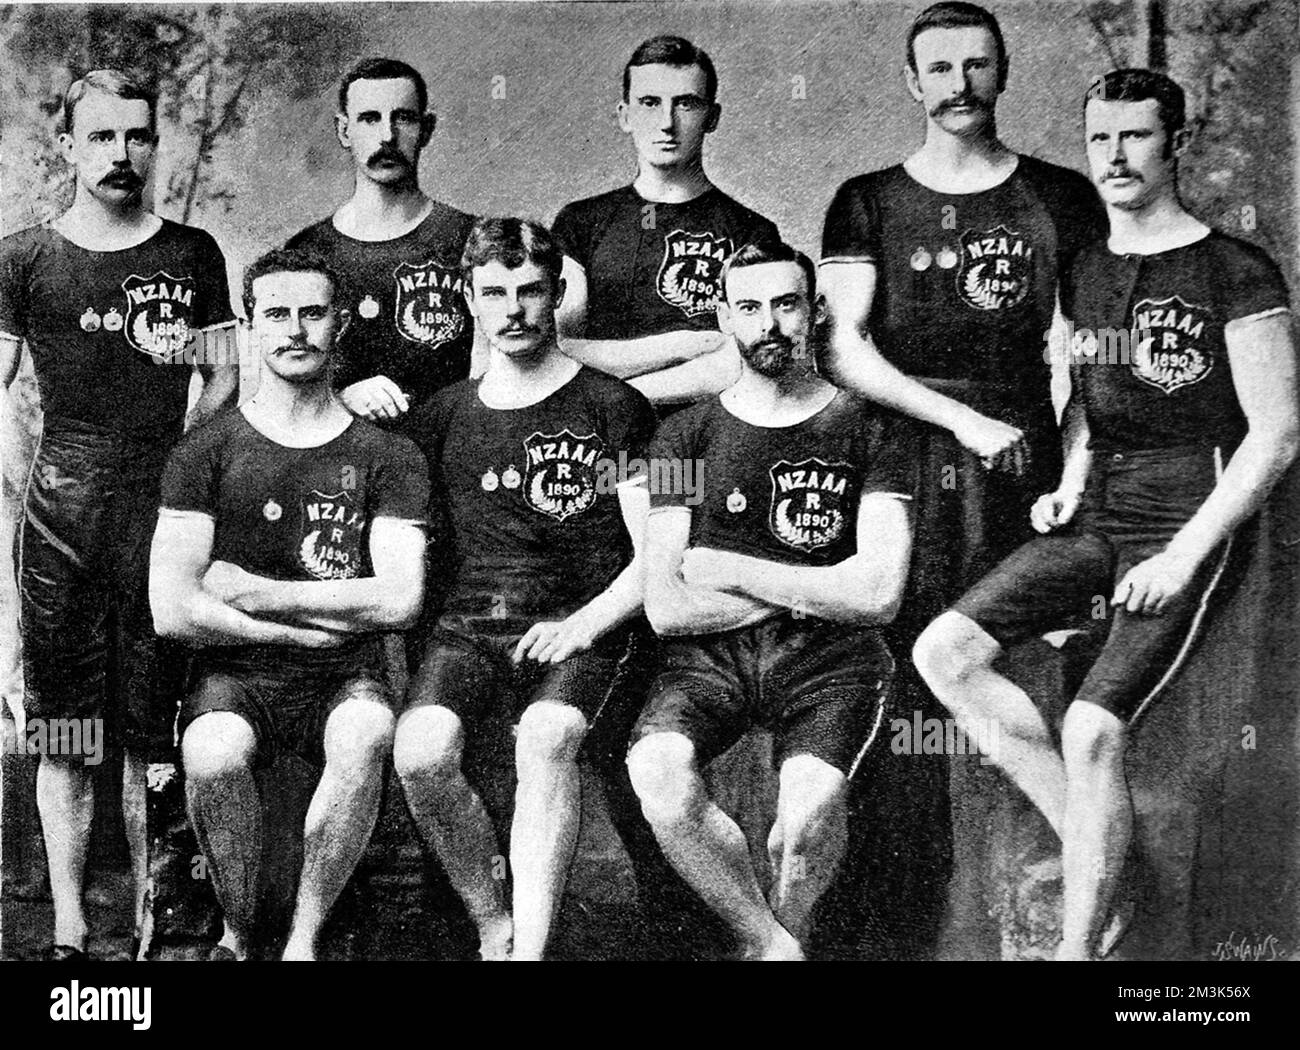 Fotografia che mostra la squadra atletica amatoriale neozelandese che ha partecipato al Campionato Australasiano Meeting di Sydney, maggio 1890. Gli uomini mostrati sono (da sinistra a destra): J.H. Hempton; F.C. Bianco; H.M. Reeves; D. Wood; P. Morrison; R.B. Lusk; E.J. McKelvey; L.A. Bracciale. Data: 8 novembre 1890 Foto Stock